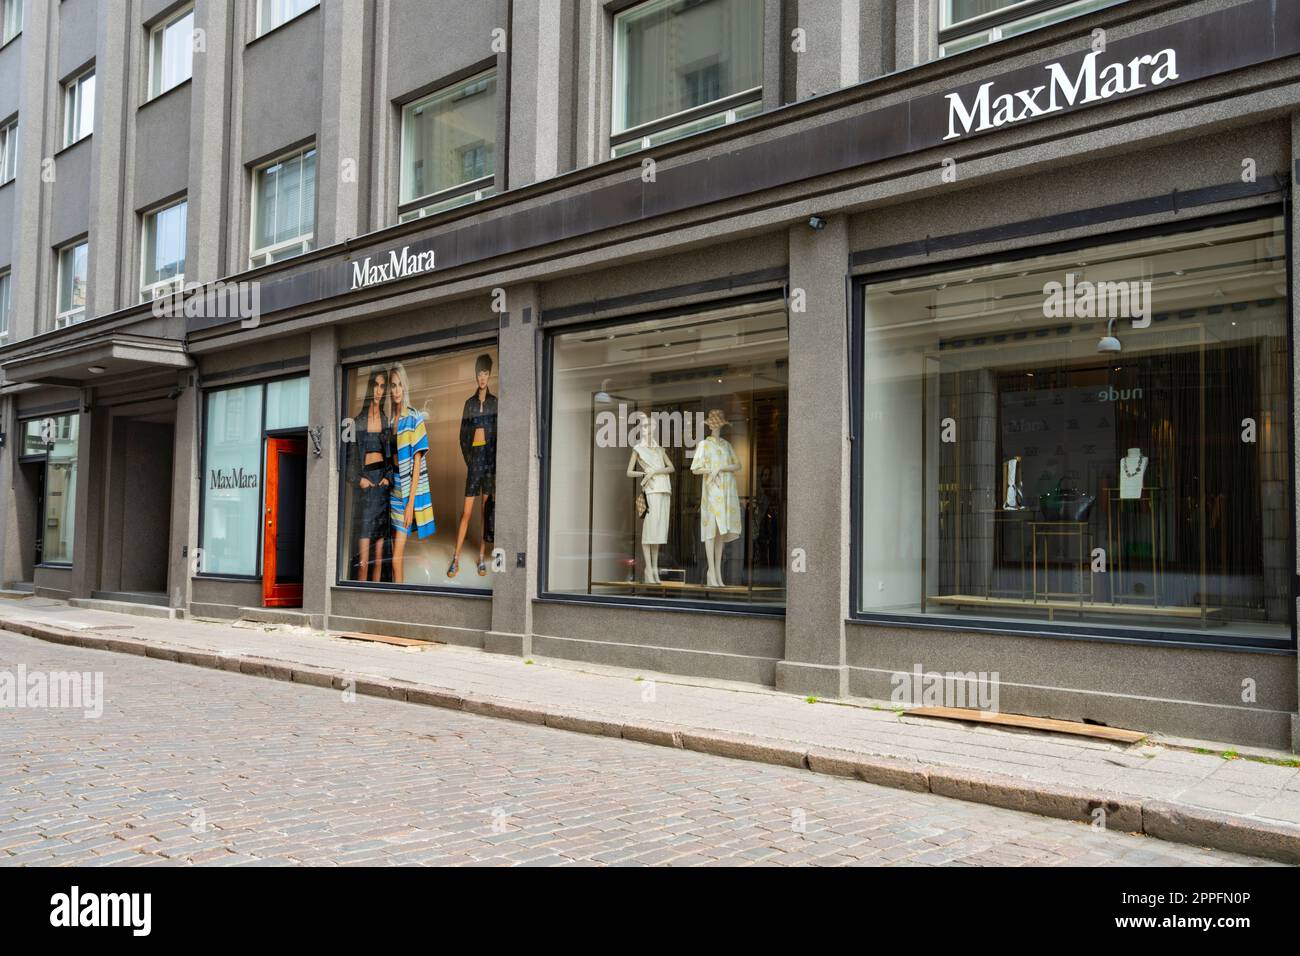 Max Mara Brand Shop dans le centre de Tallinn, Estonie Banque D'Images